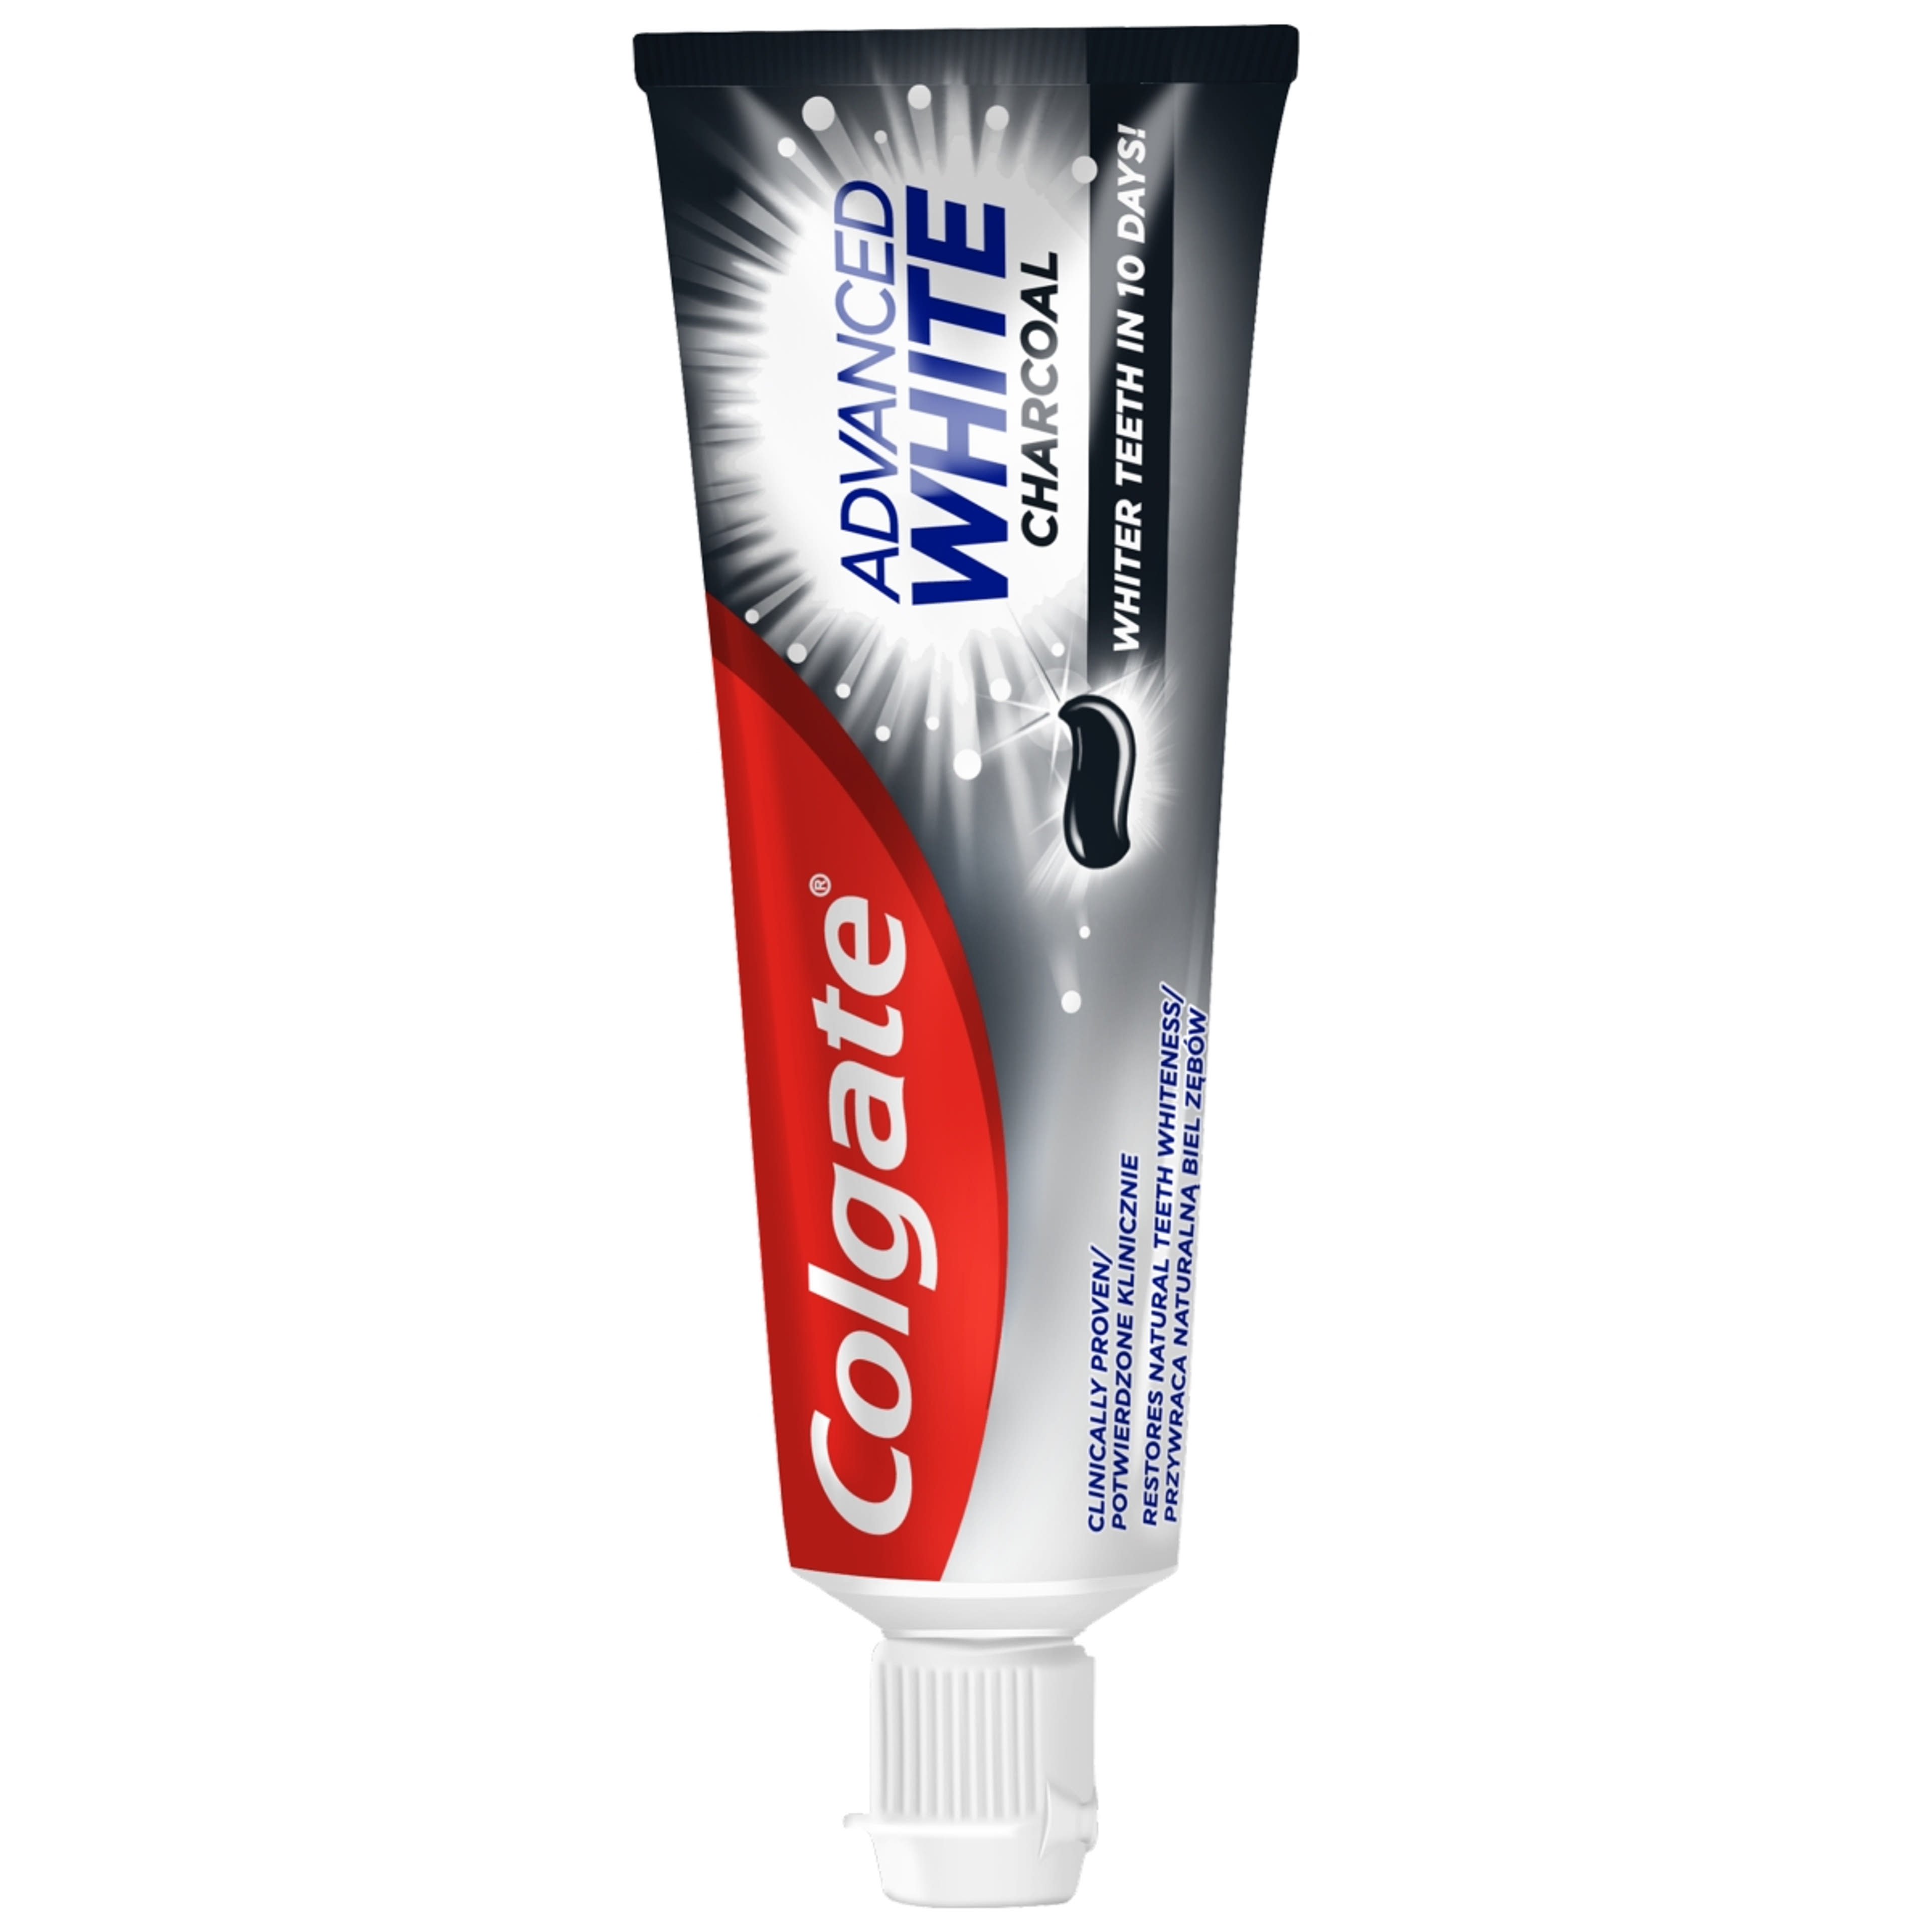 Colgate Advanced Whitening Charcoal fogkrém - 75 ml-2